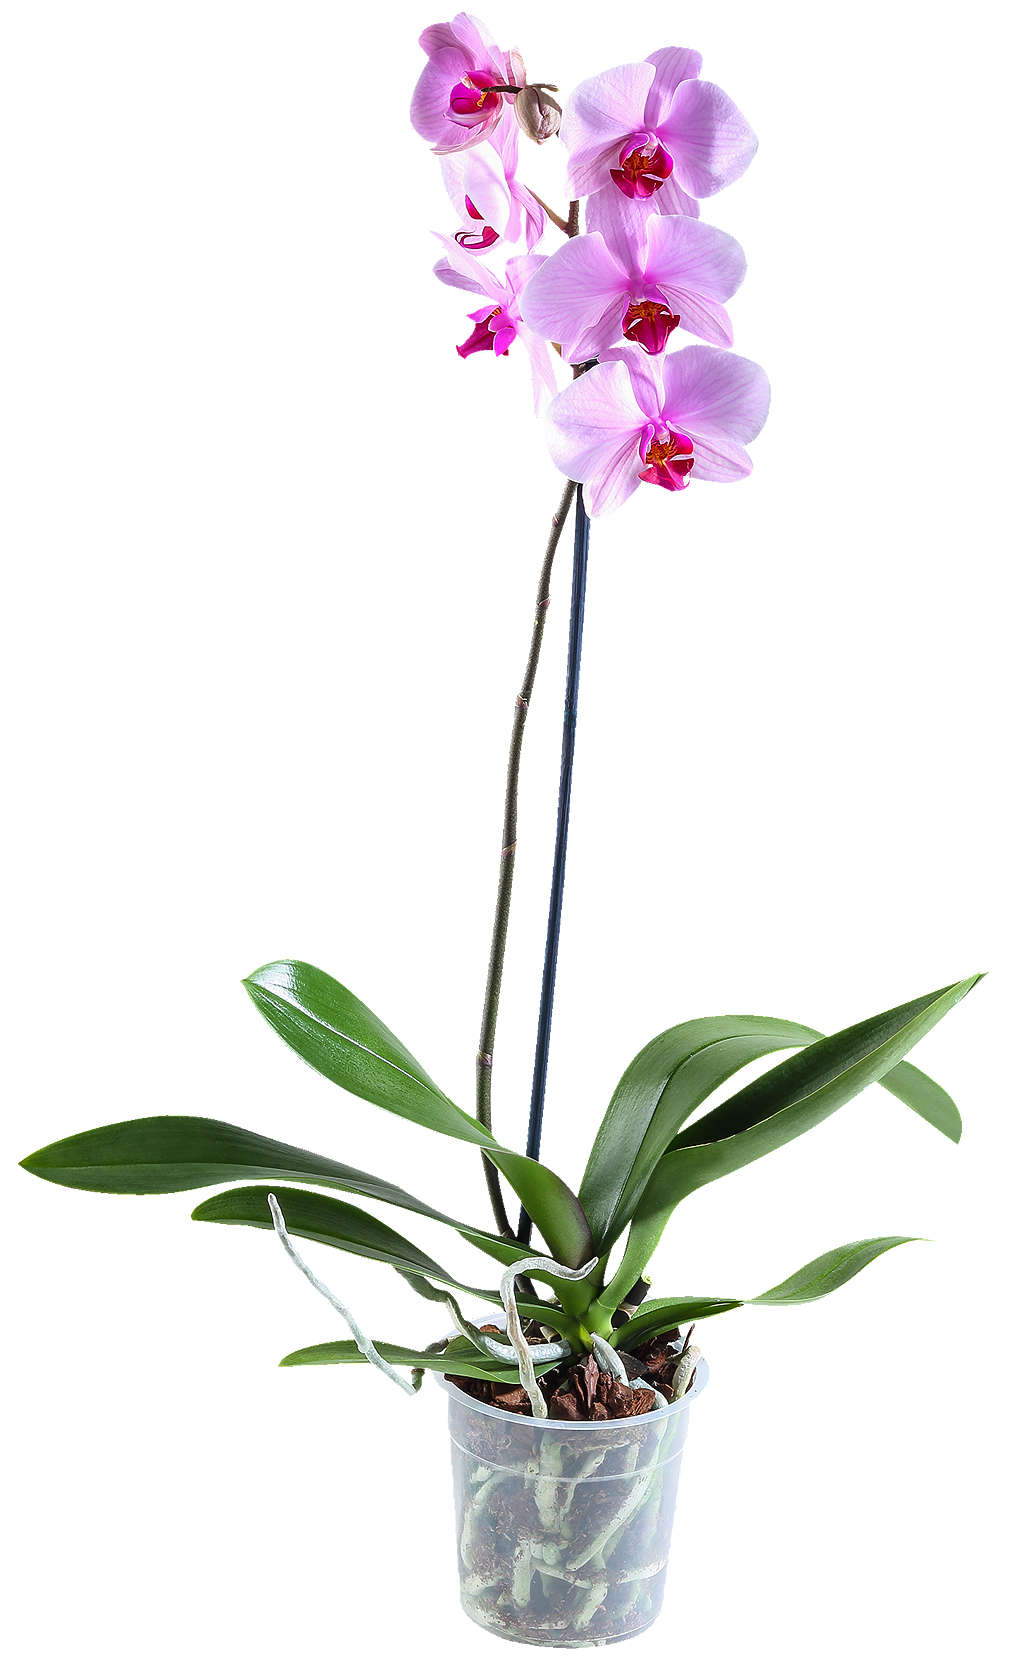 Zobrazit nabídku Orchidea-Phalaenopsis 1 výhon